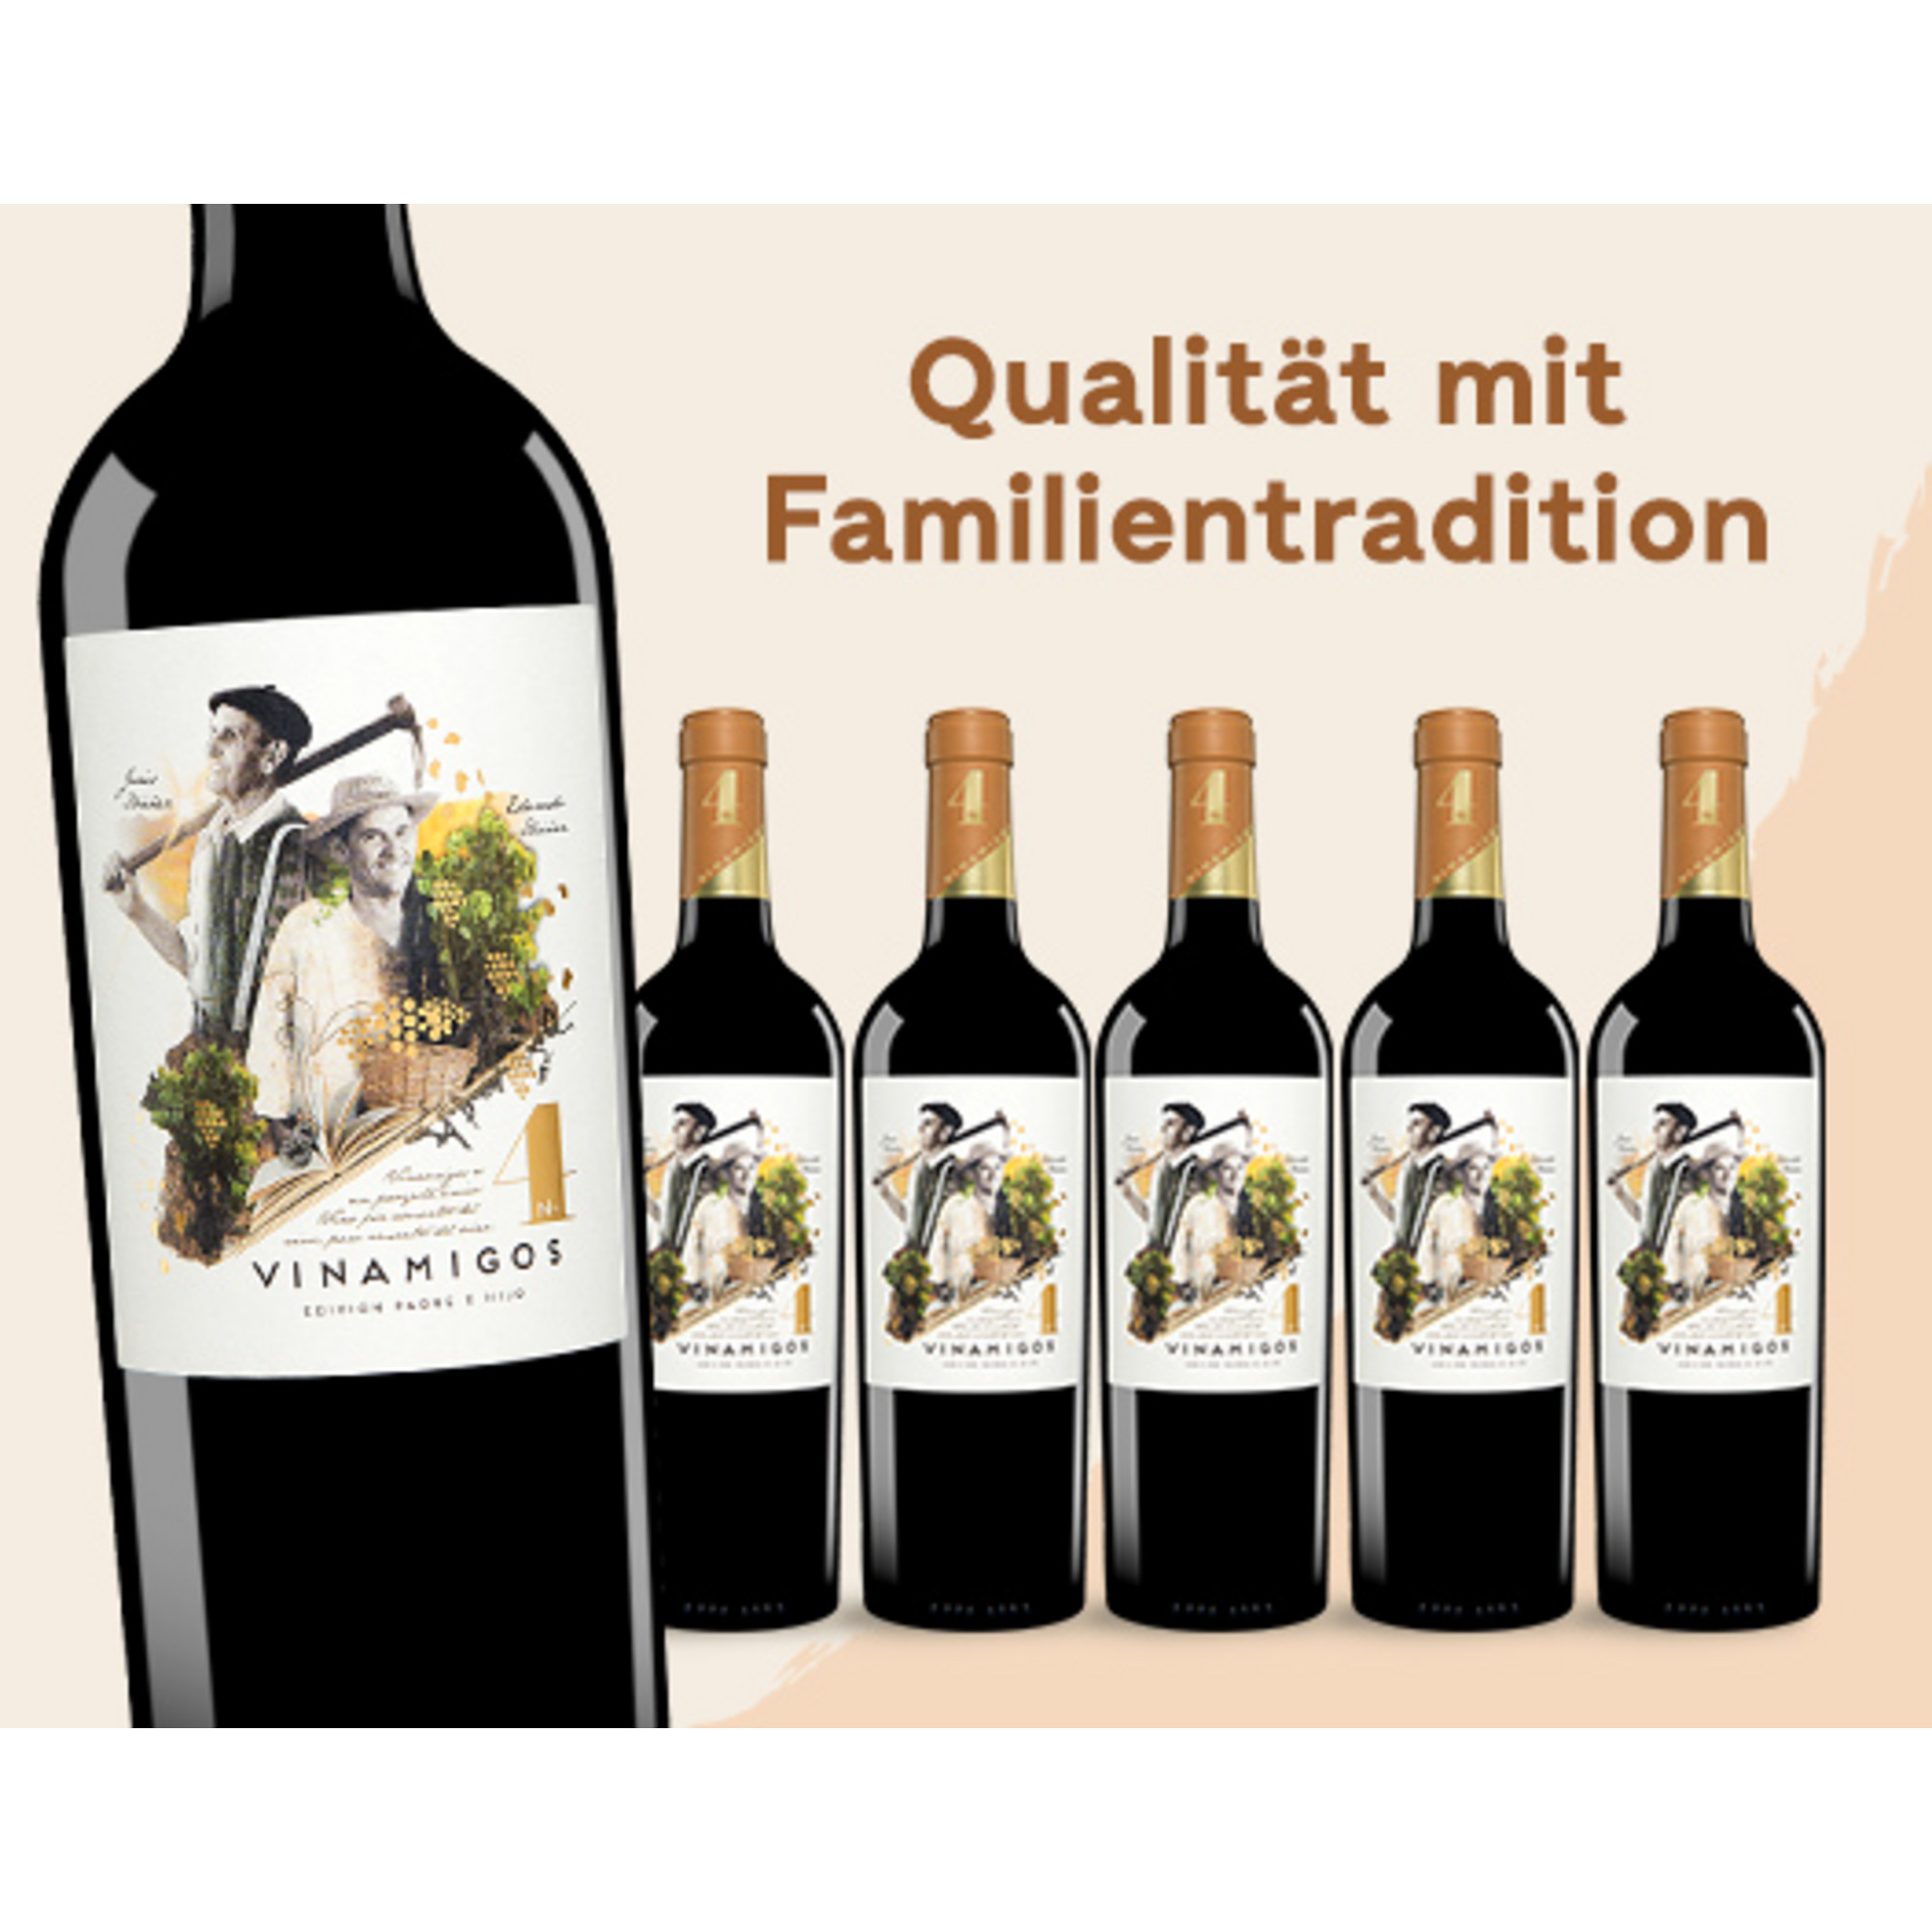 E*Special - Vinamigos 4 2013  4.5L 15% Vol. Trocken Weinpaket aus Spanien 24624 vinos DE